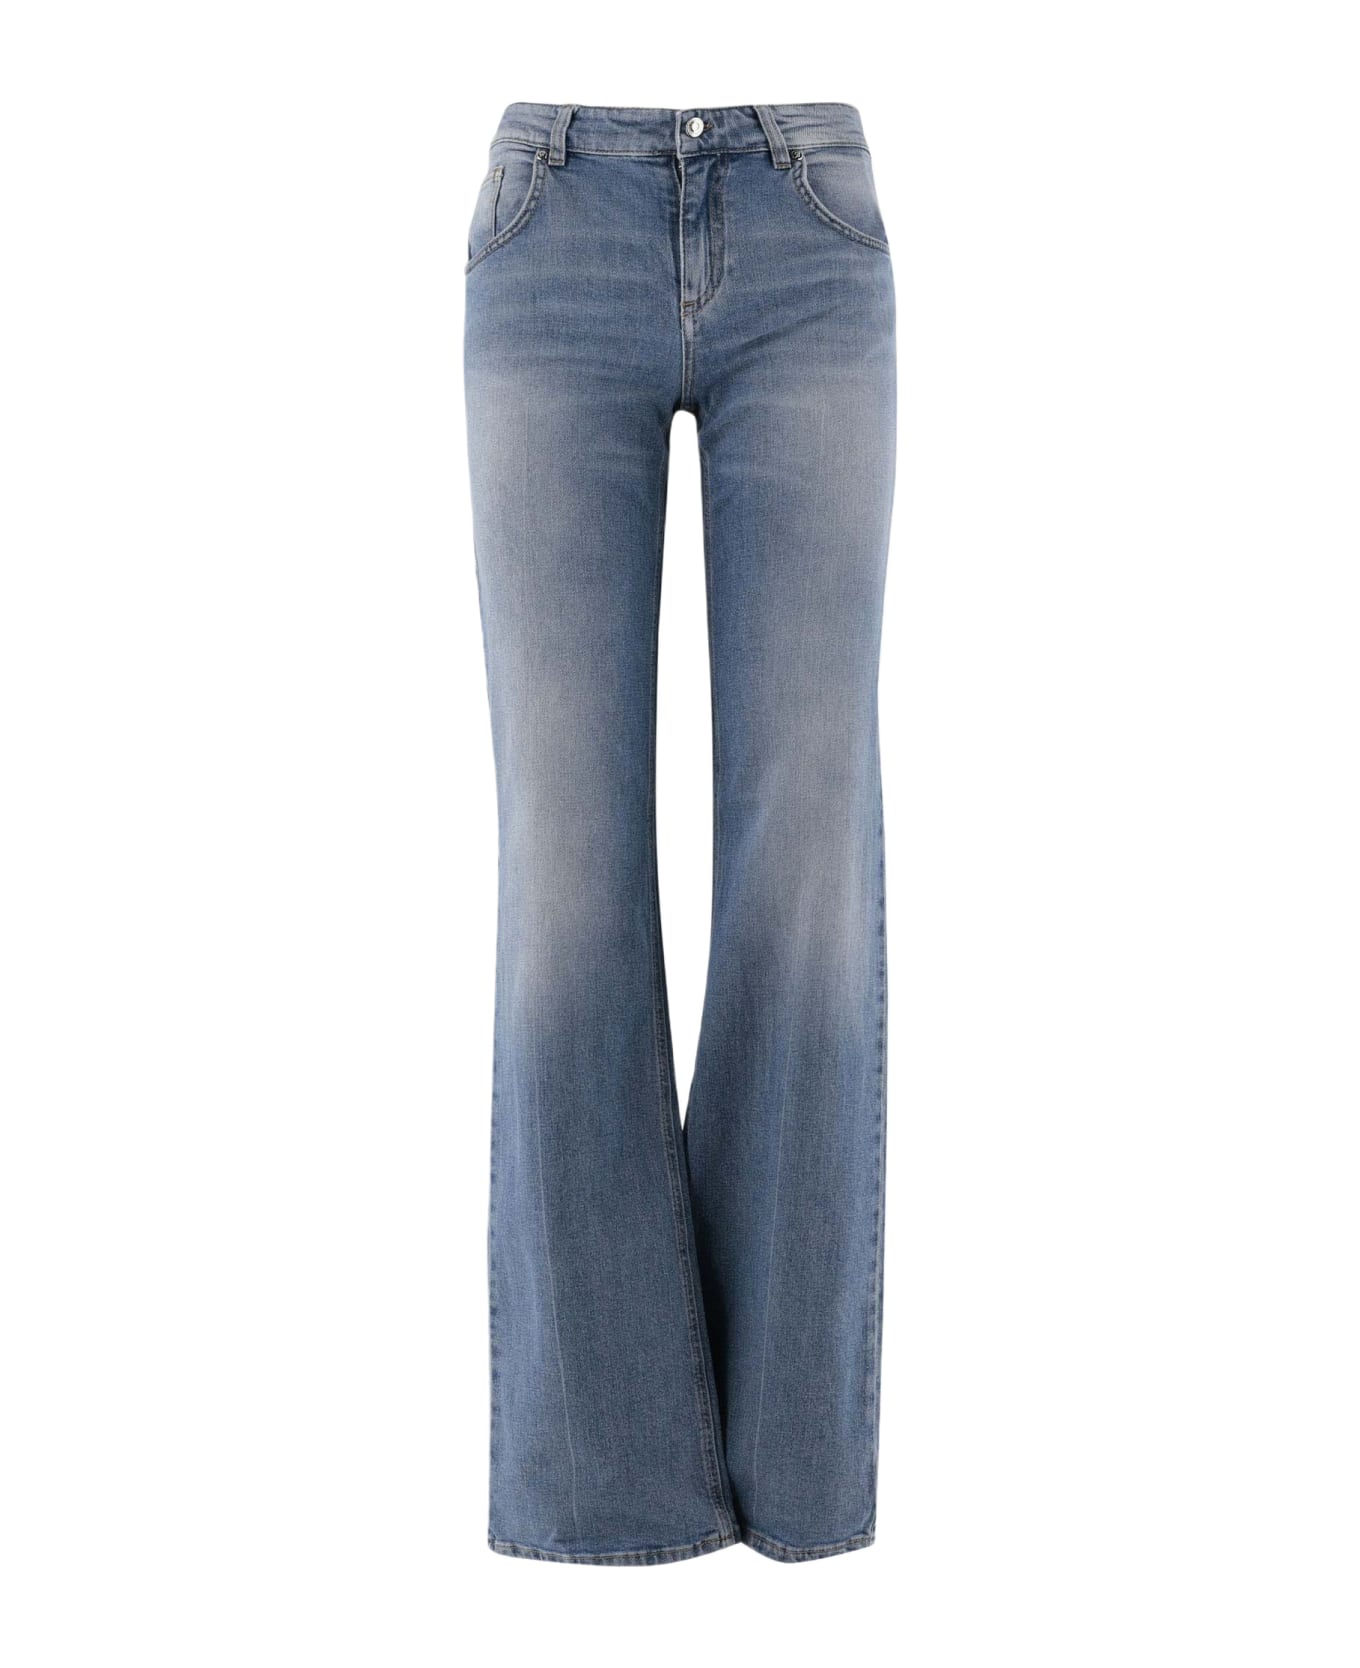 Blumarine Flared Jeans In Stretch Cotton Denim - Denim